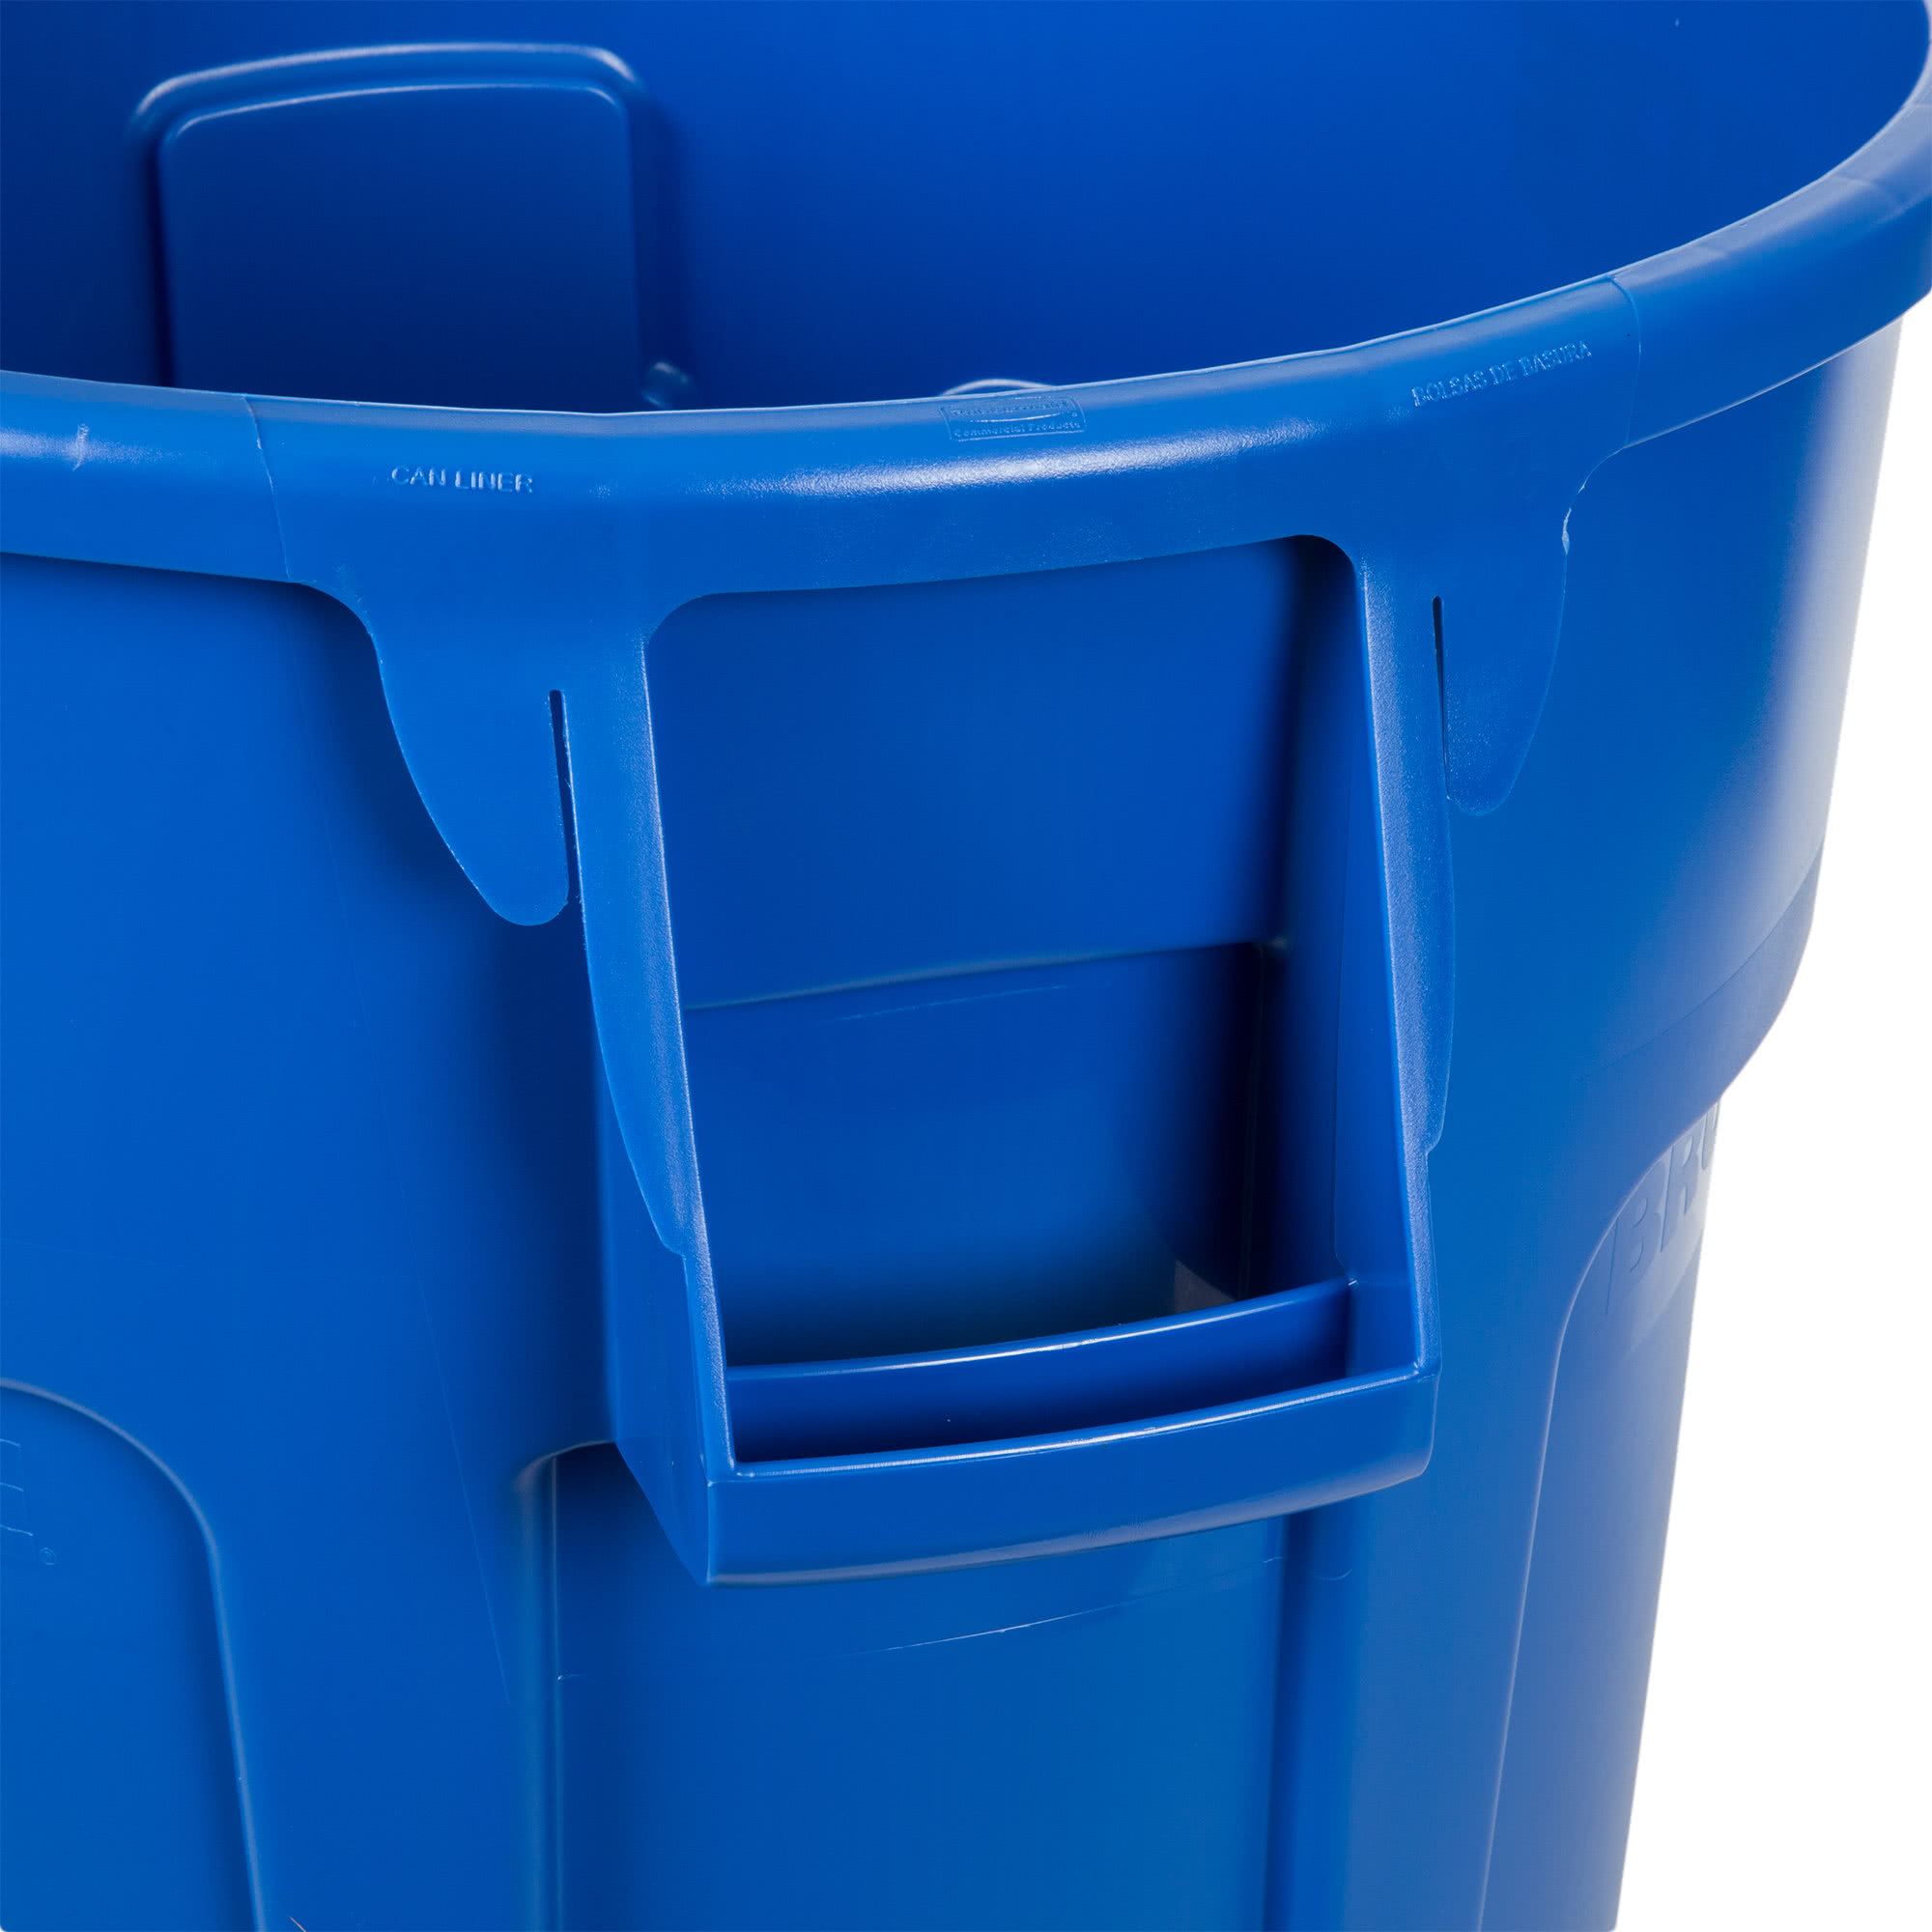 Rubbermaid FG264300BLUE contenedor Brute color azul con capacidad para 44 galones